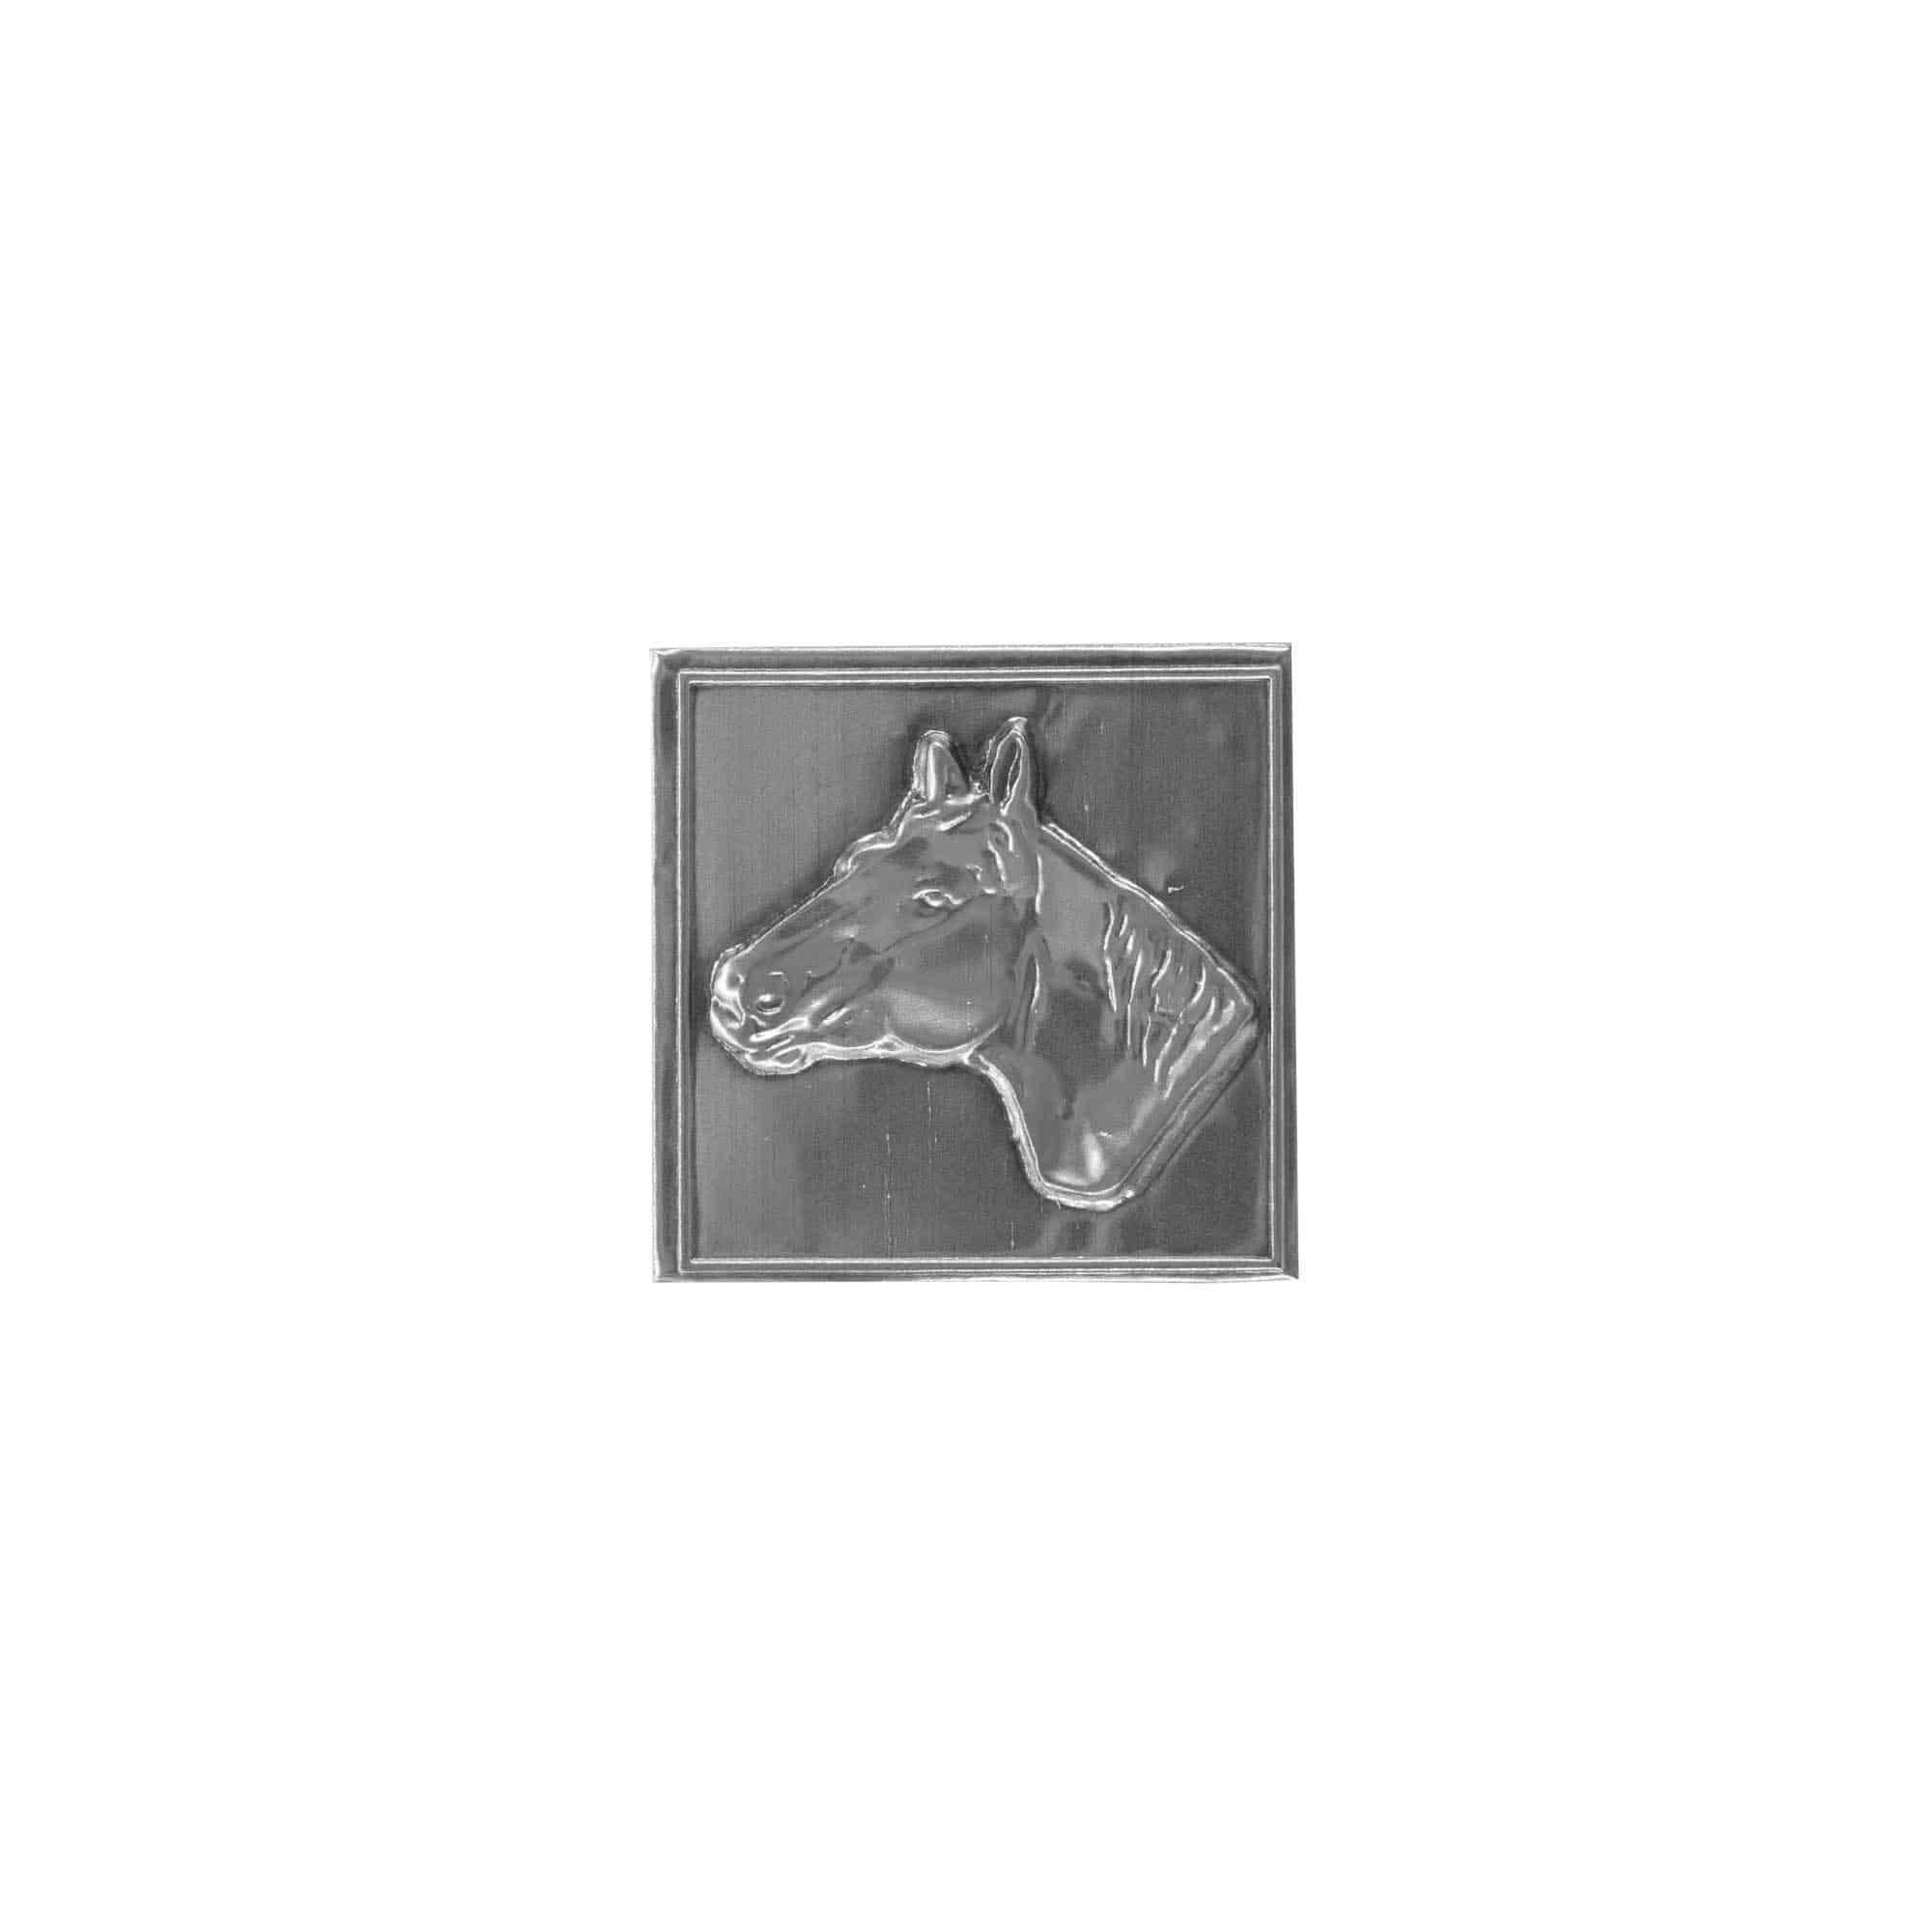 Cínový štítek 'Kůň', čtvercový, kov, stříbrný